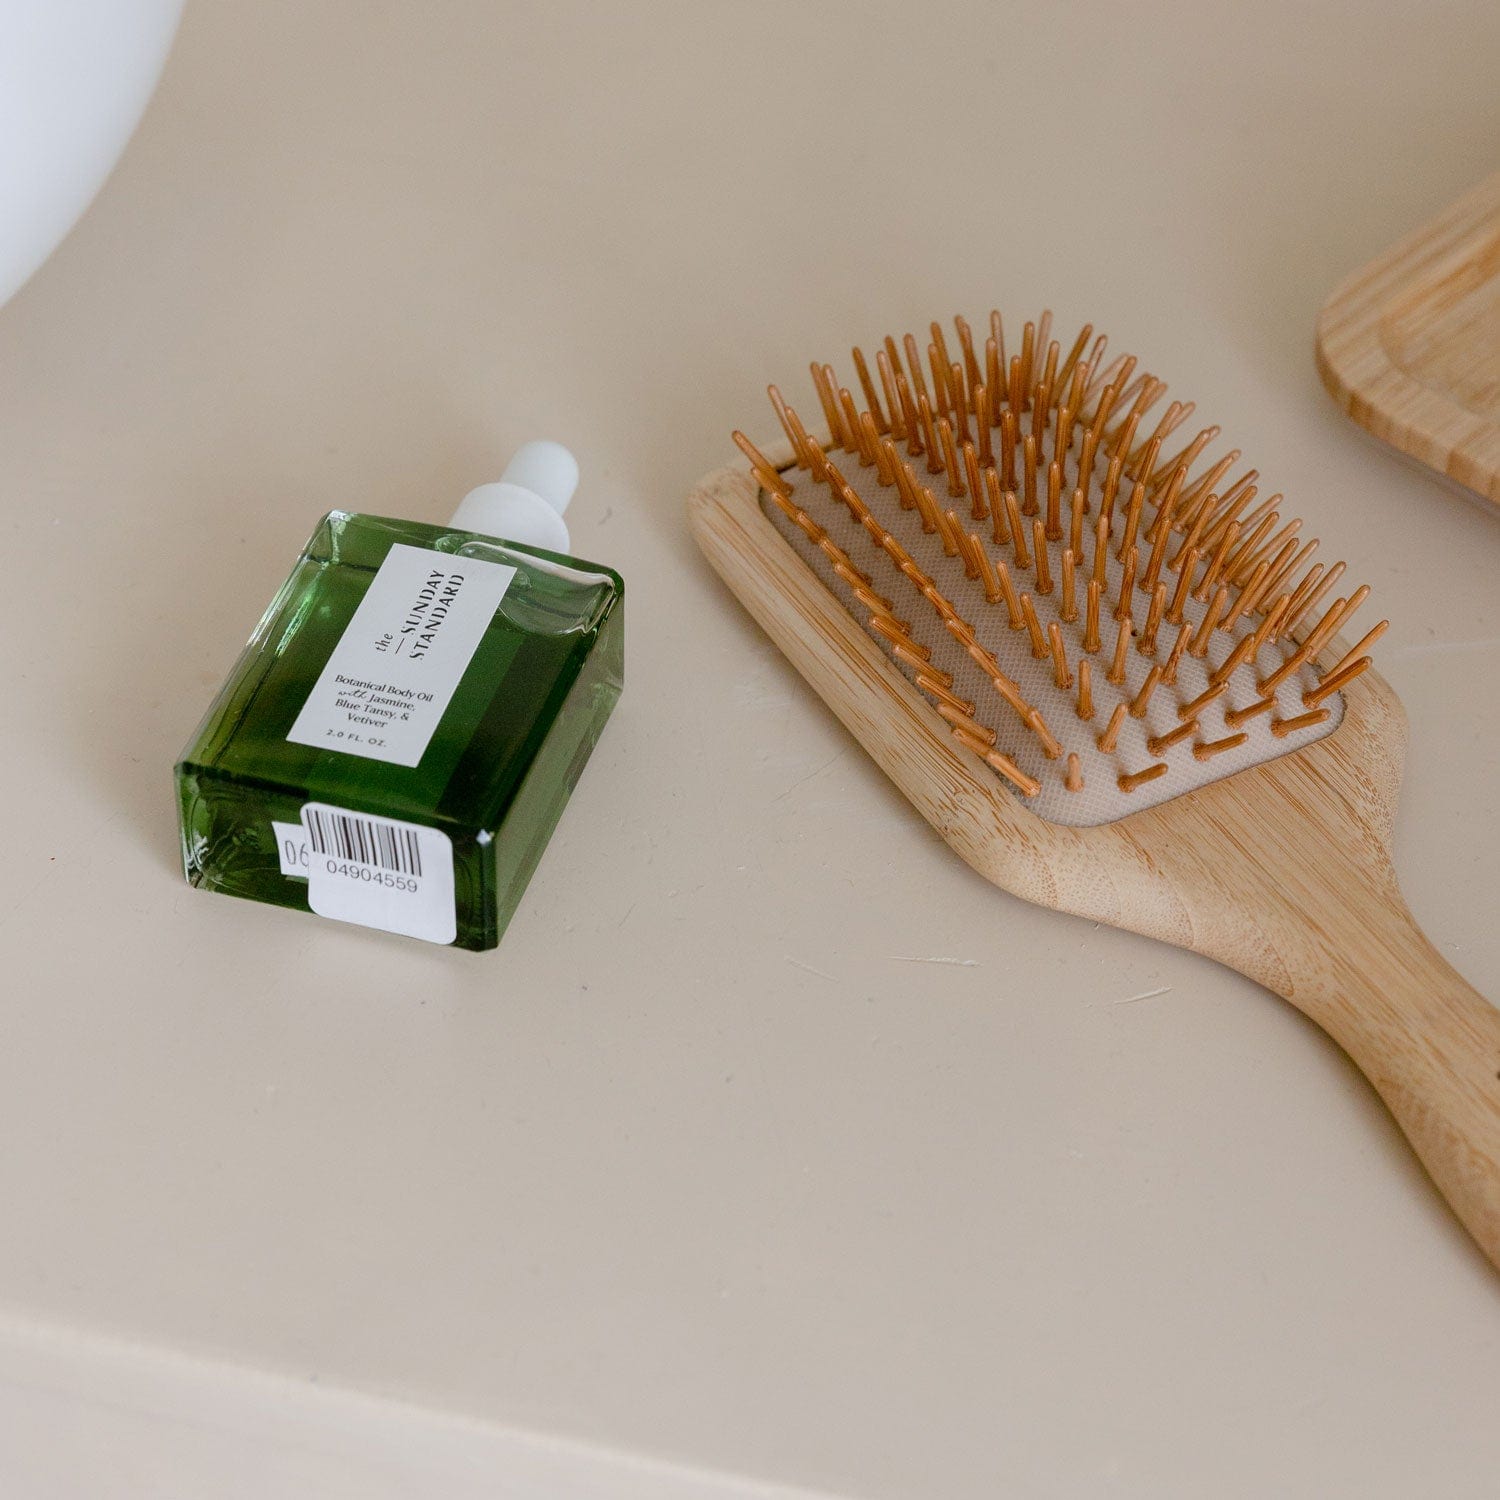 ZWS Essentials Bamboo Hairbrush - Zero Waste Hair Brush, Plastic Free, 100% Bamboo, Compostable